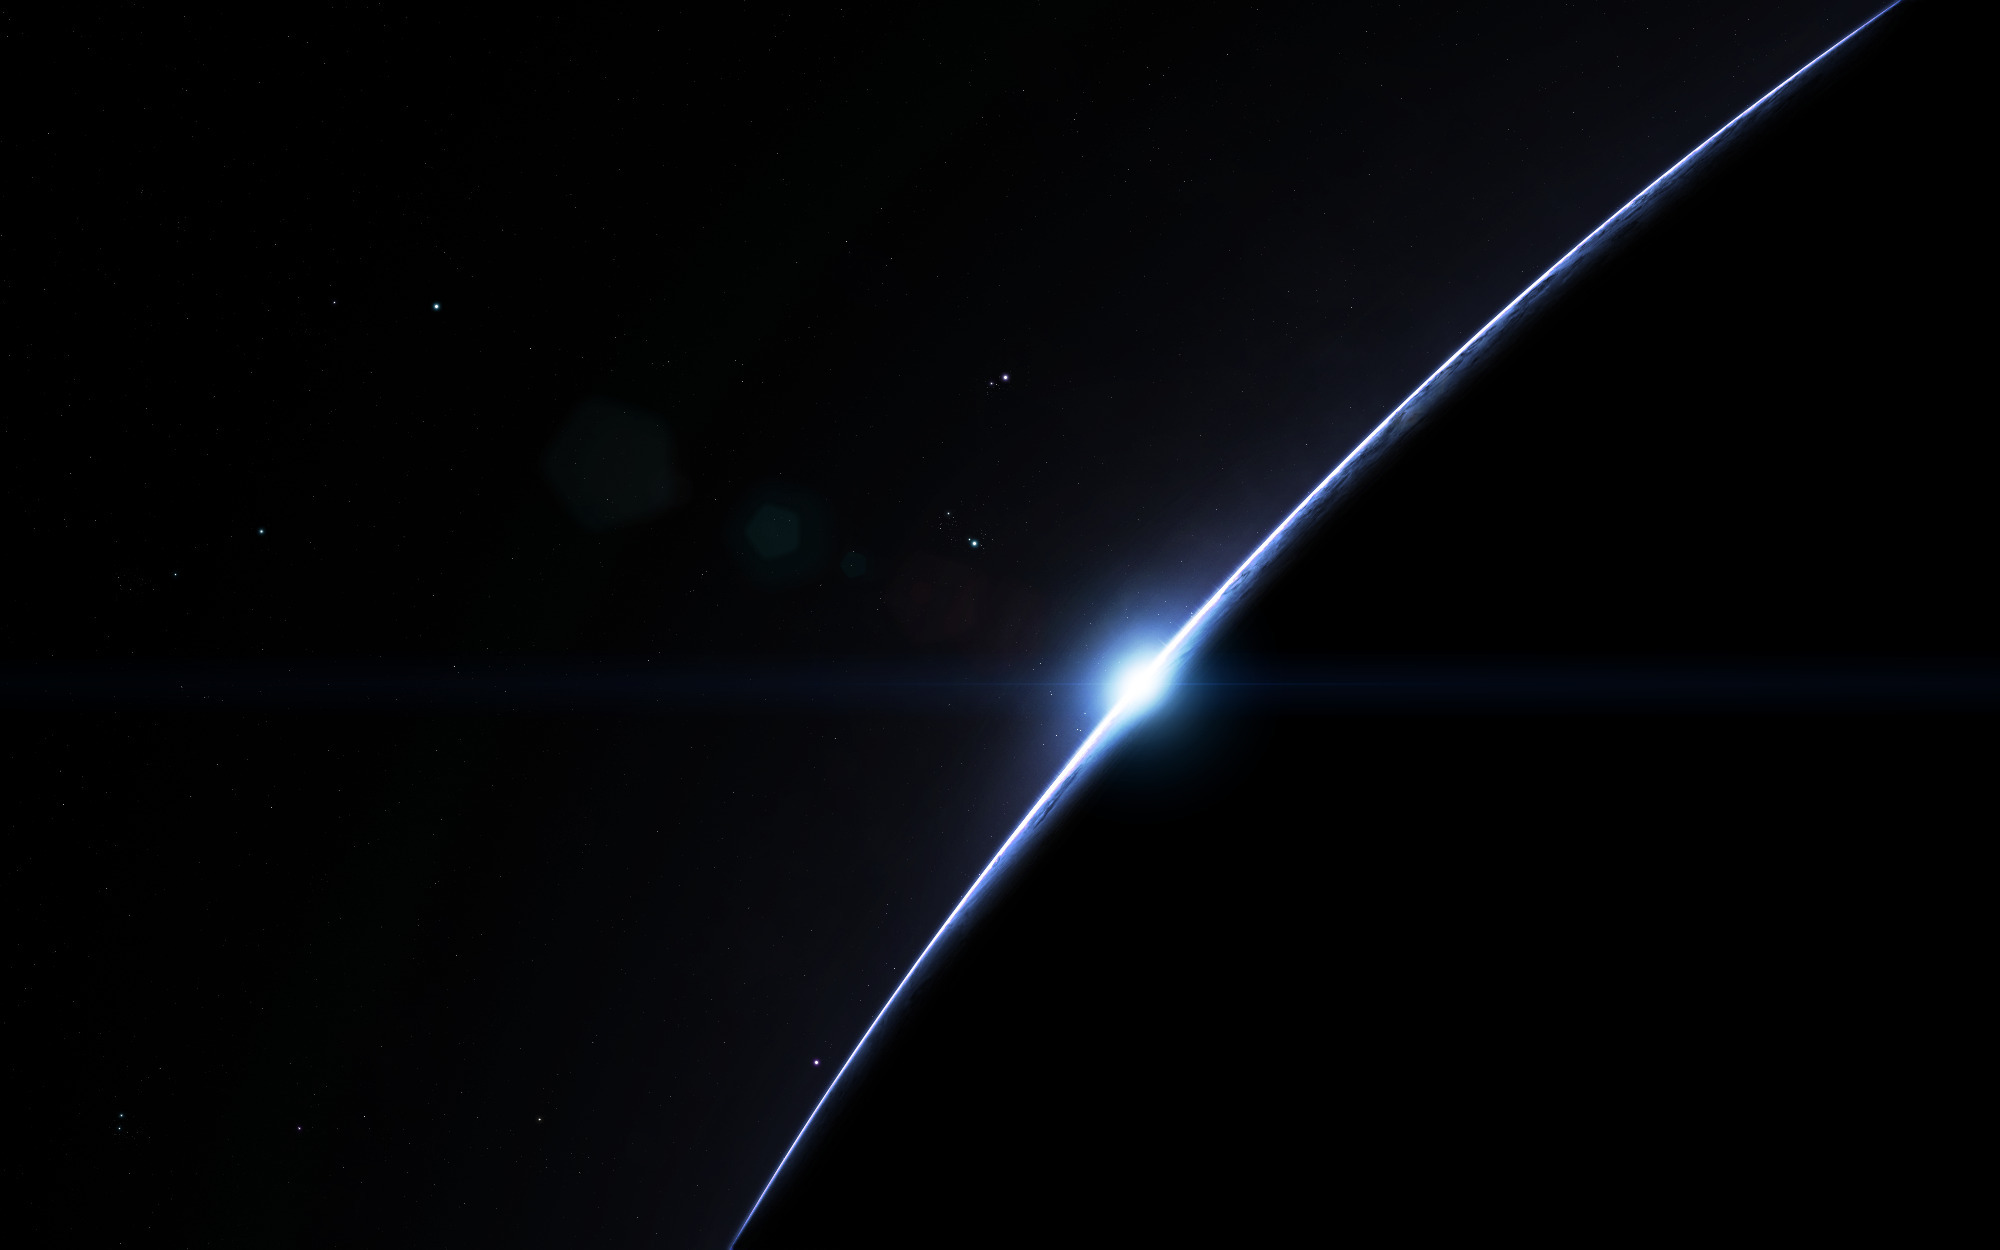 Обои Восход солнца над планетой картинки на рабочий стол на тему Космос - скачать загрузить